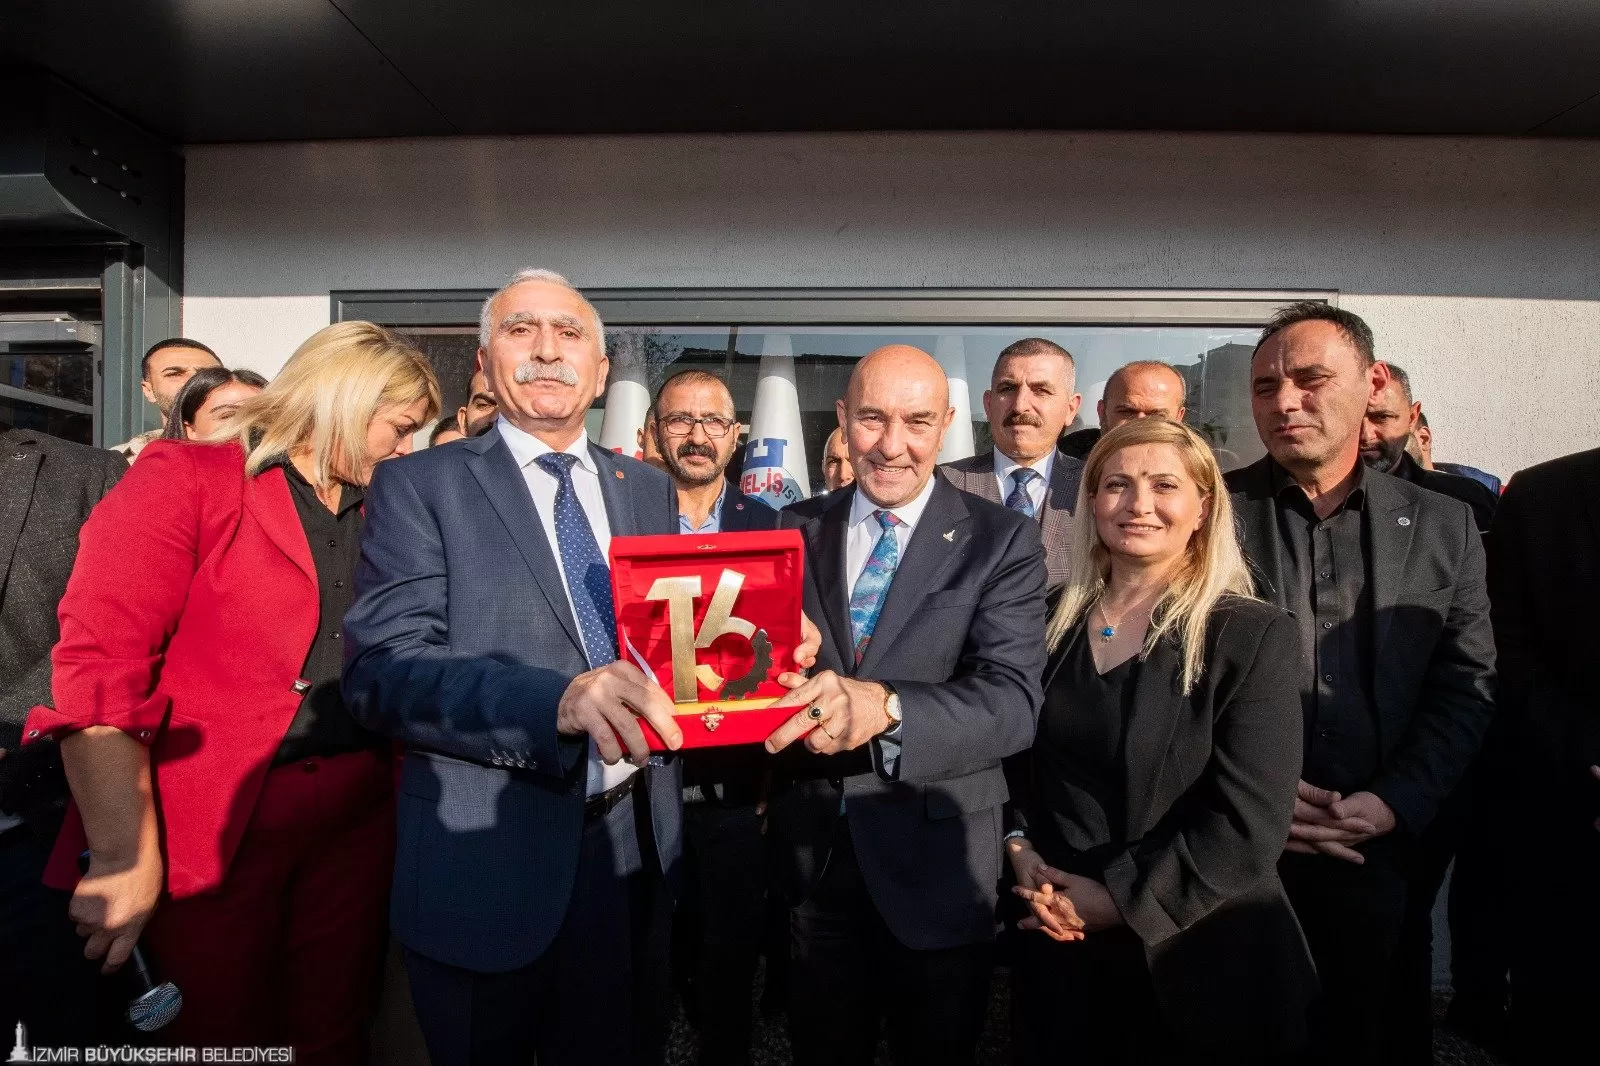 İzmir Büyükşehir Belediye Başkanı Tunç Soyer, DİSK Ege Bölge Temsilciliği'nin daveti üzerine işçilerle bir araya geldi. 